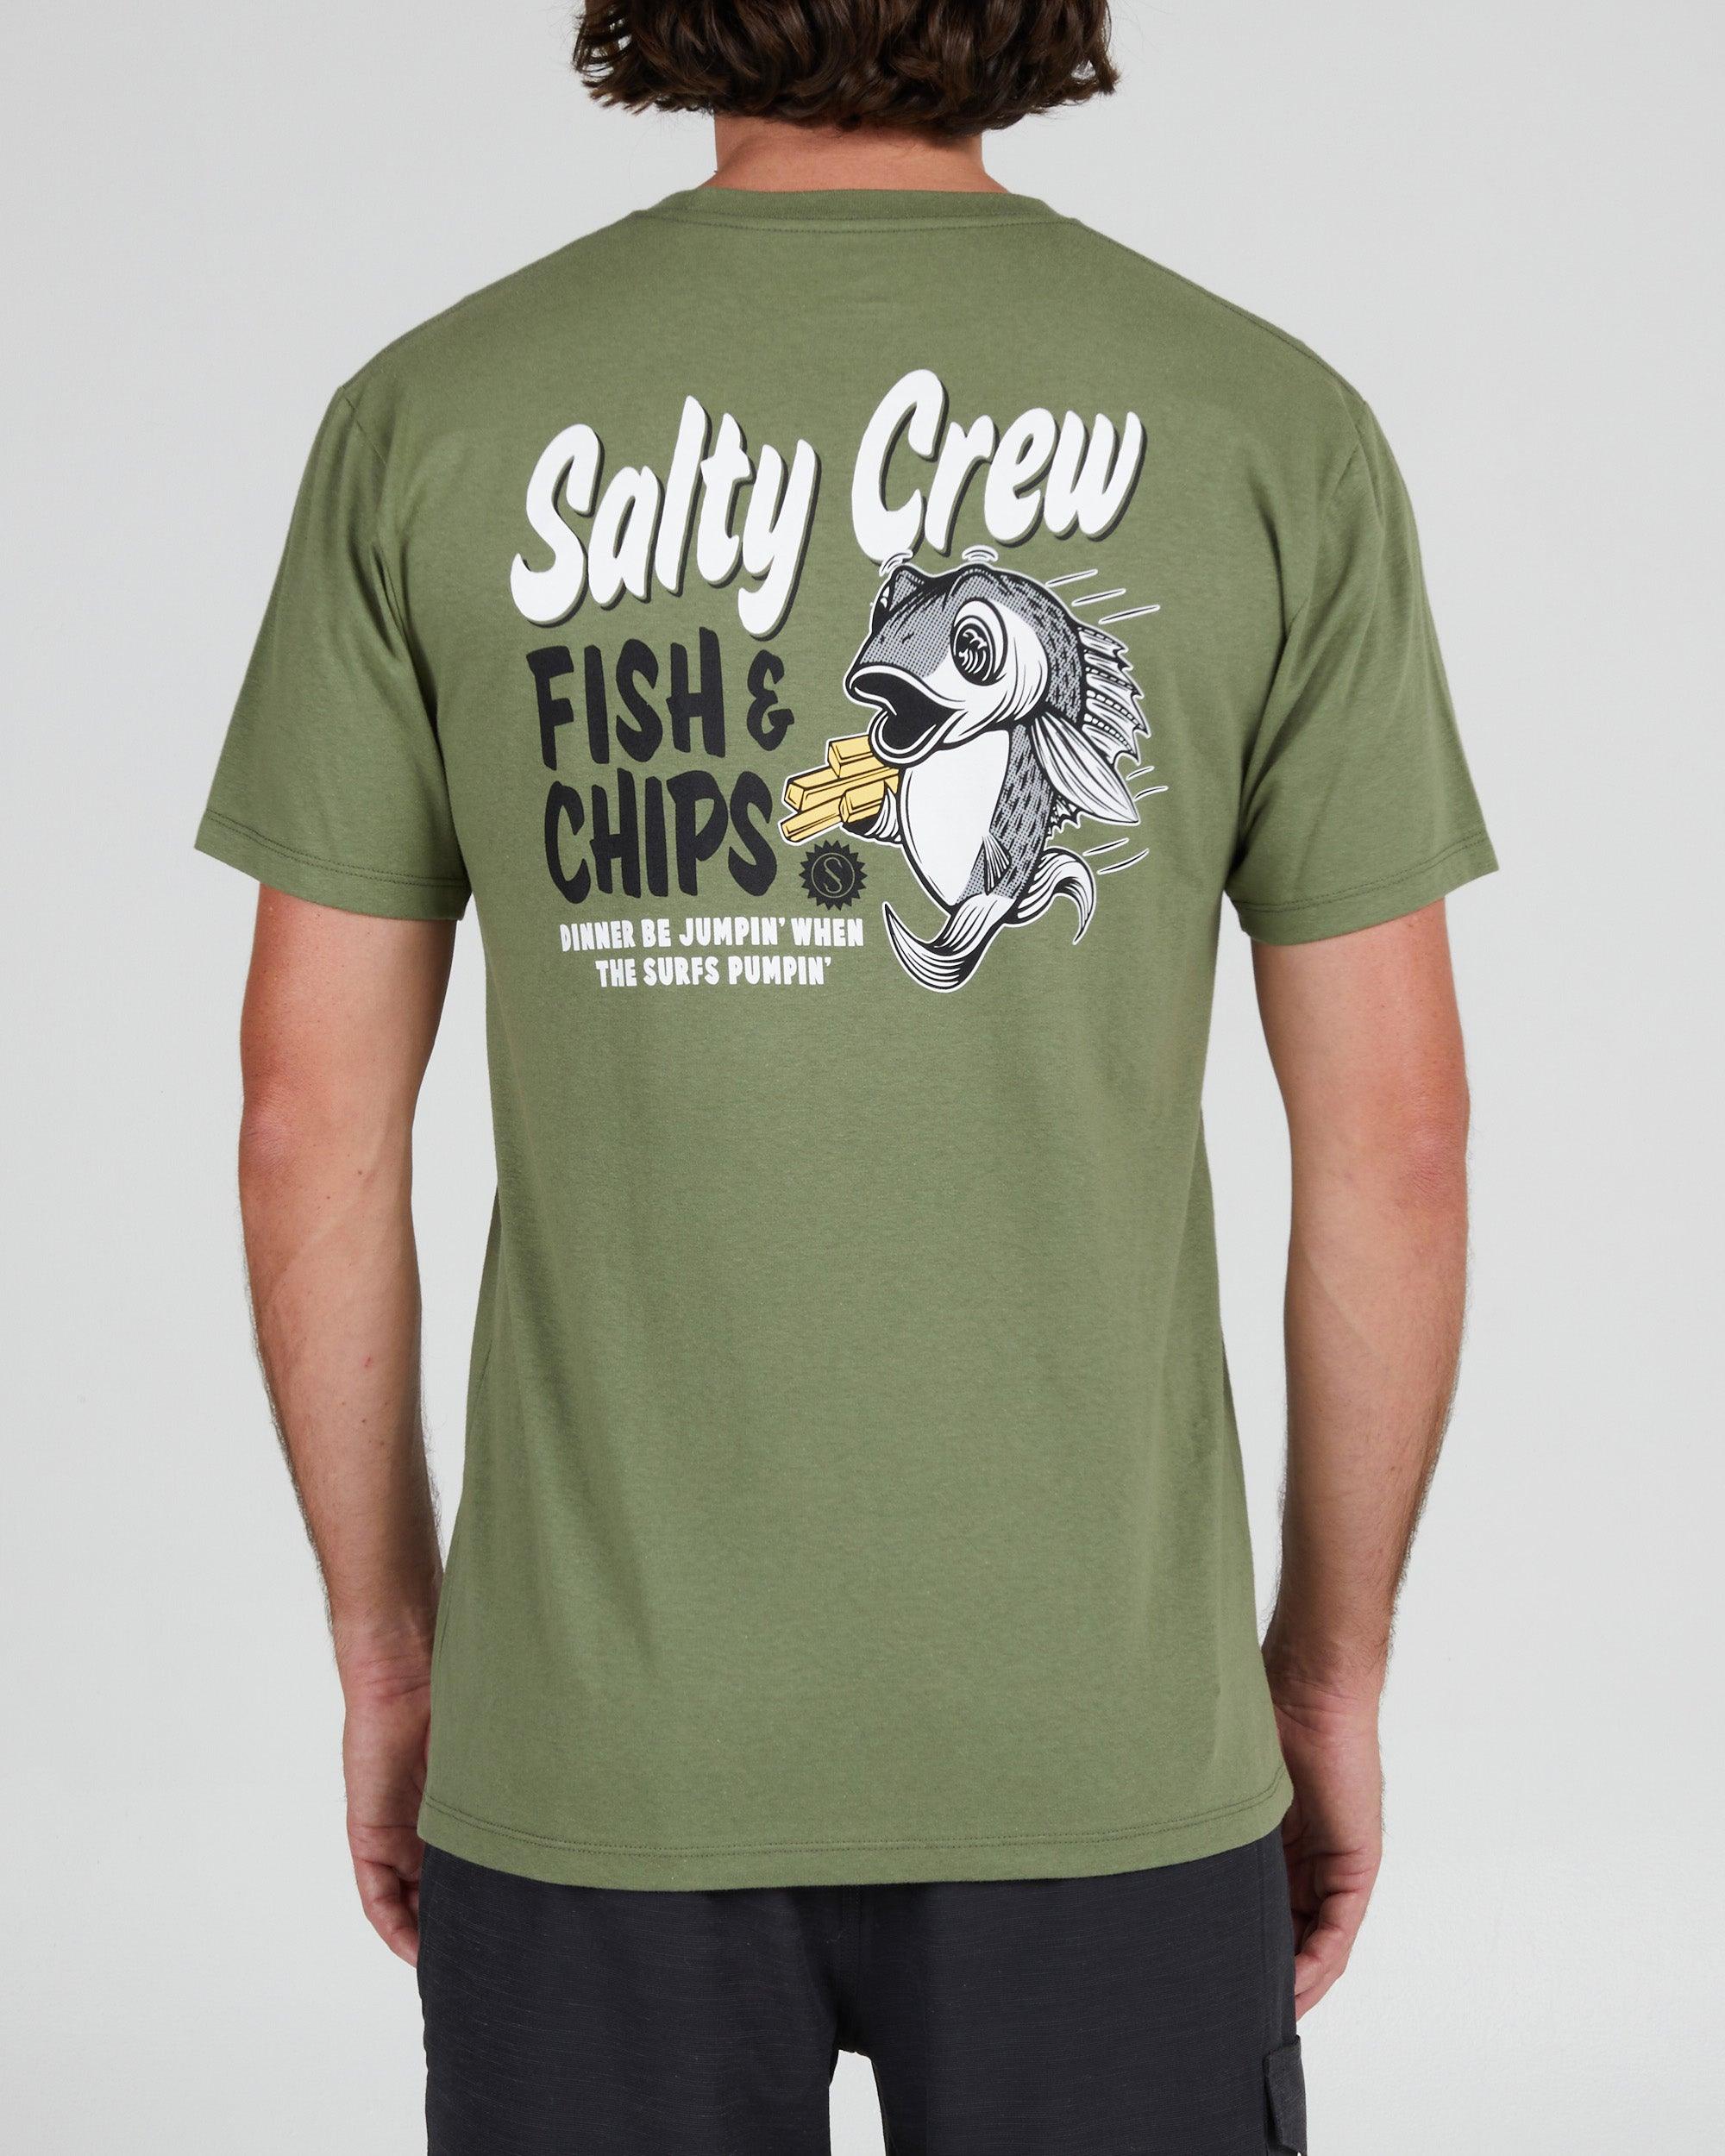 Salty Crew In Fishing We Trust T-Shirt - Buy now